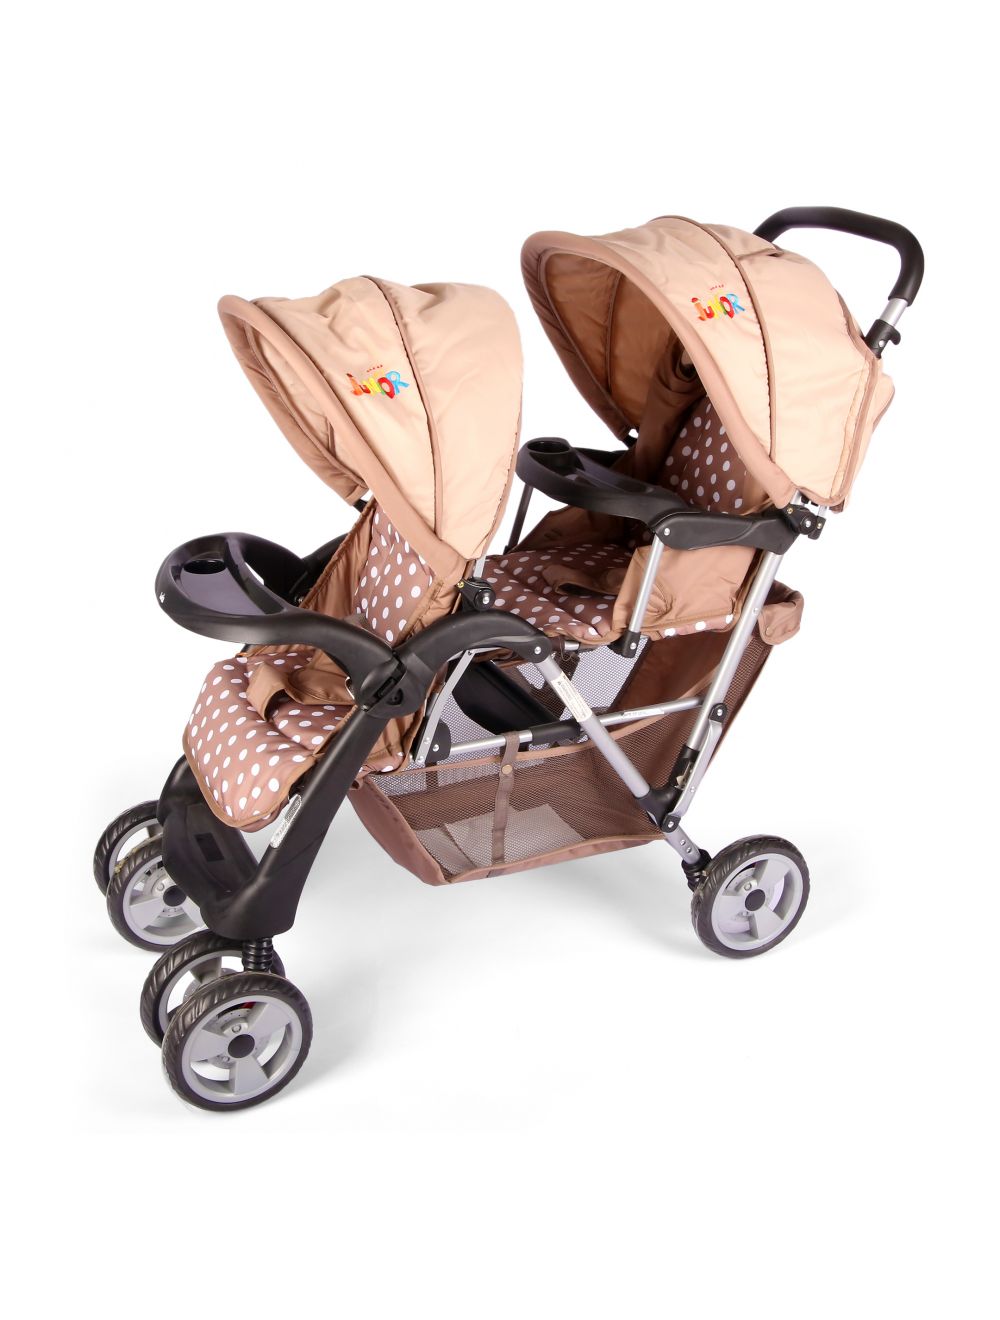 Joymaker Twin Baby Stroller Brown